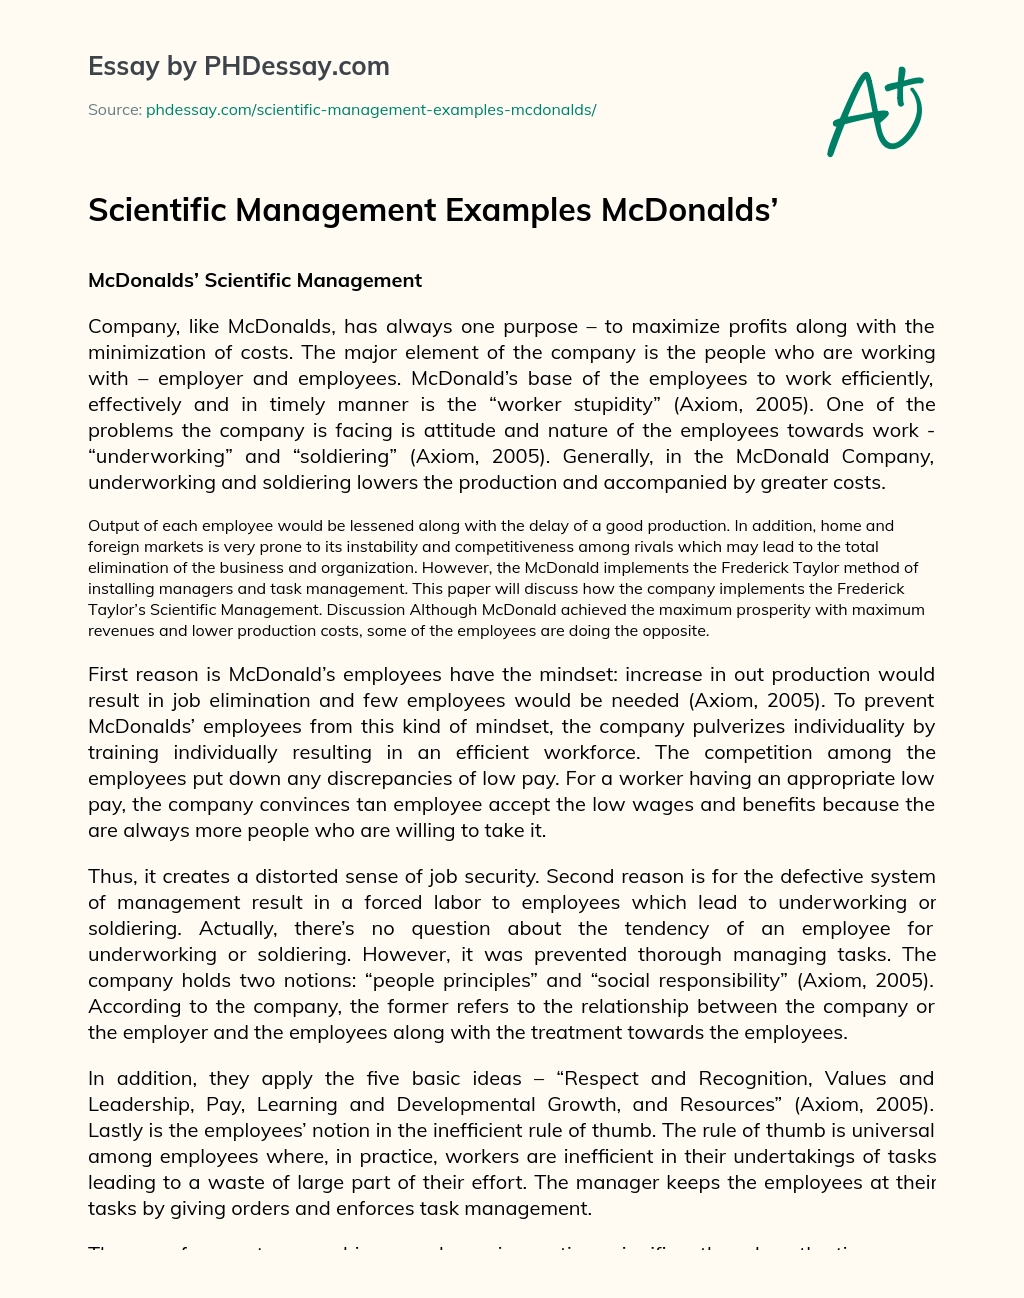 Scientific Management Examples McDonalds’ essay